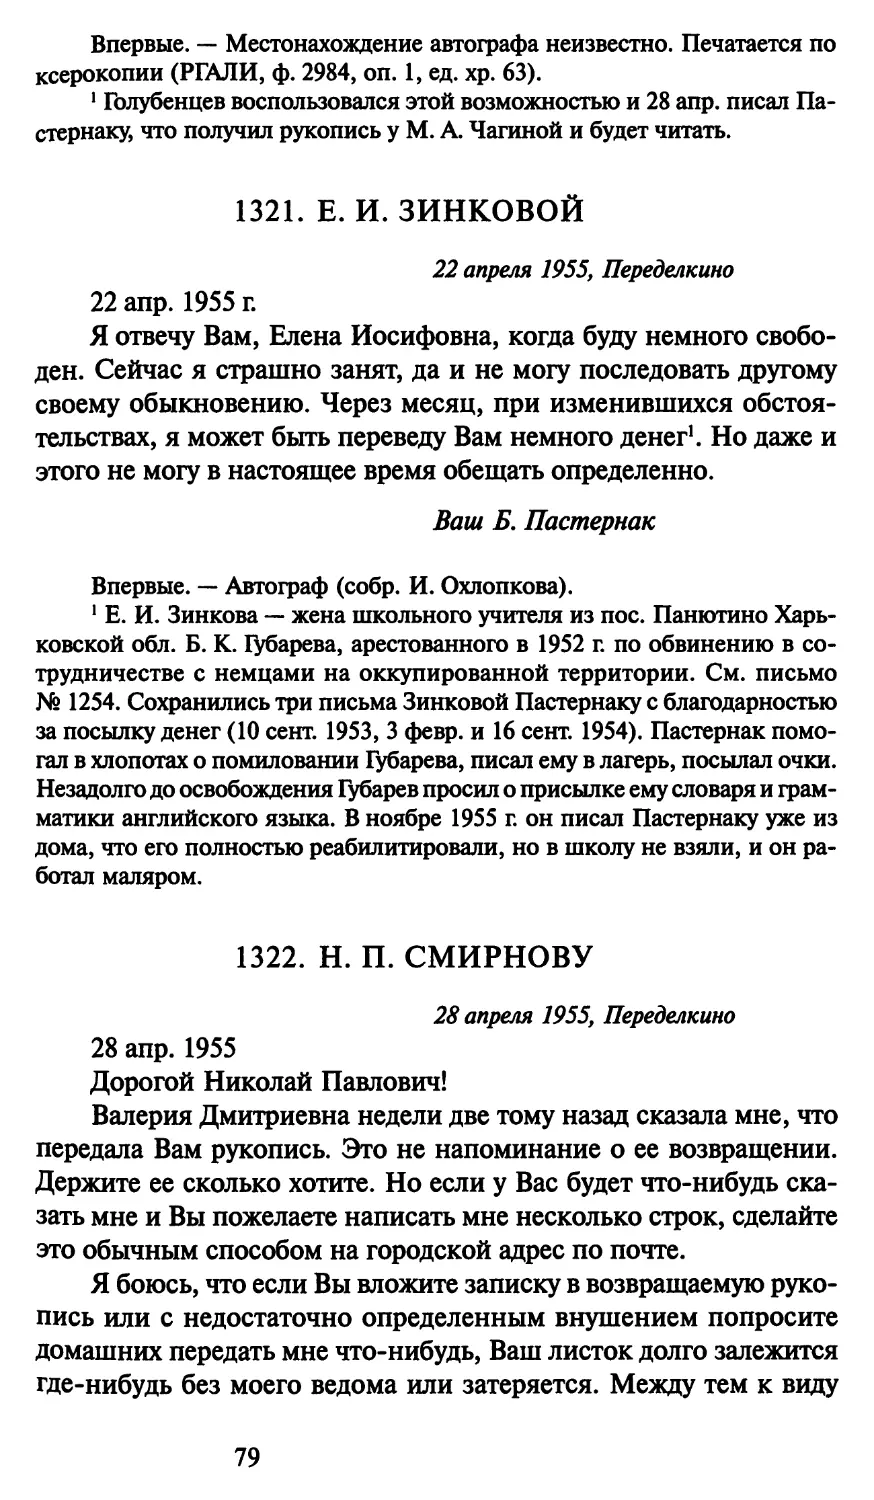 1321. Е. И. Зинковой 22 апреля 1955
1322. Н. П. Смирнову 28 апреля 1955